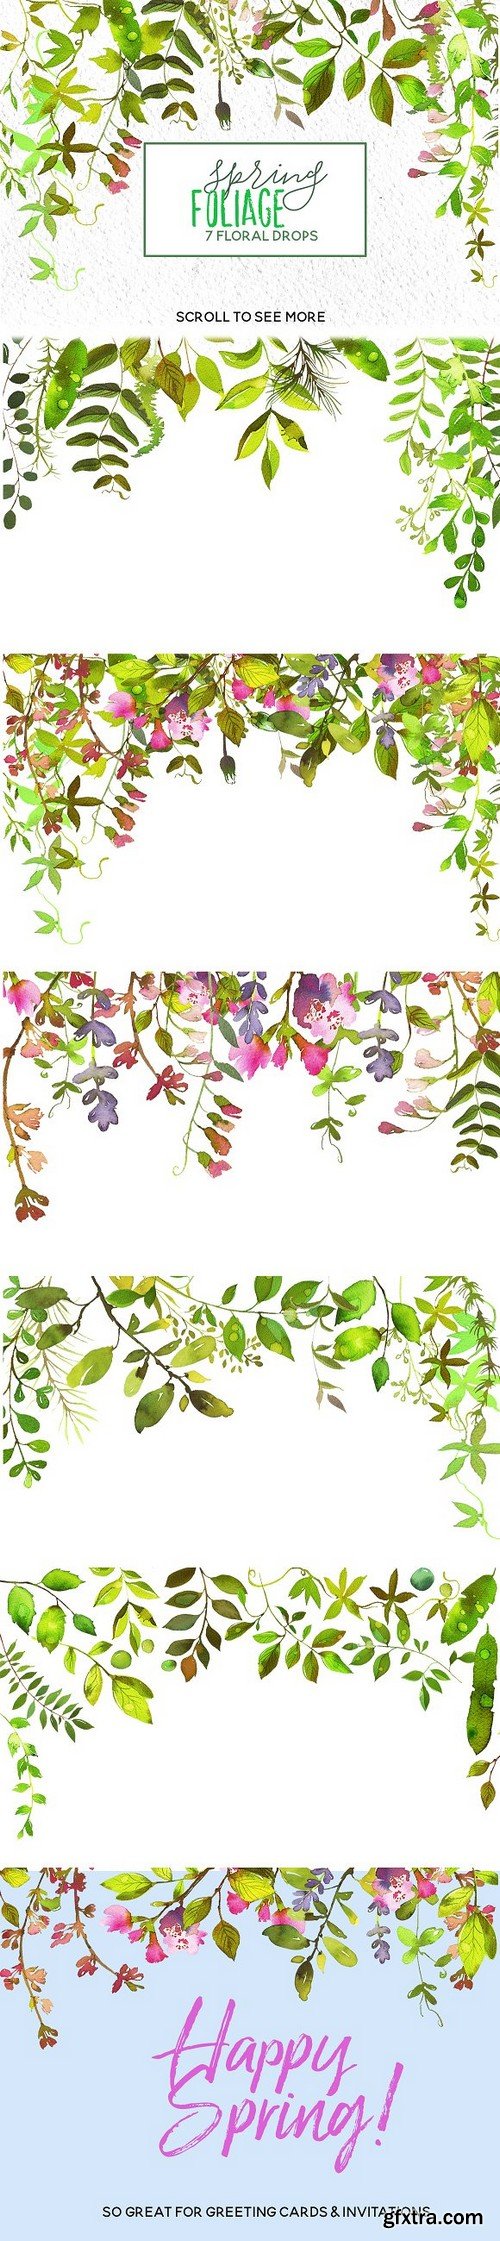 CM - Spring Foliage Watercolor Bundle 1277861